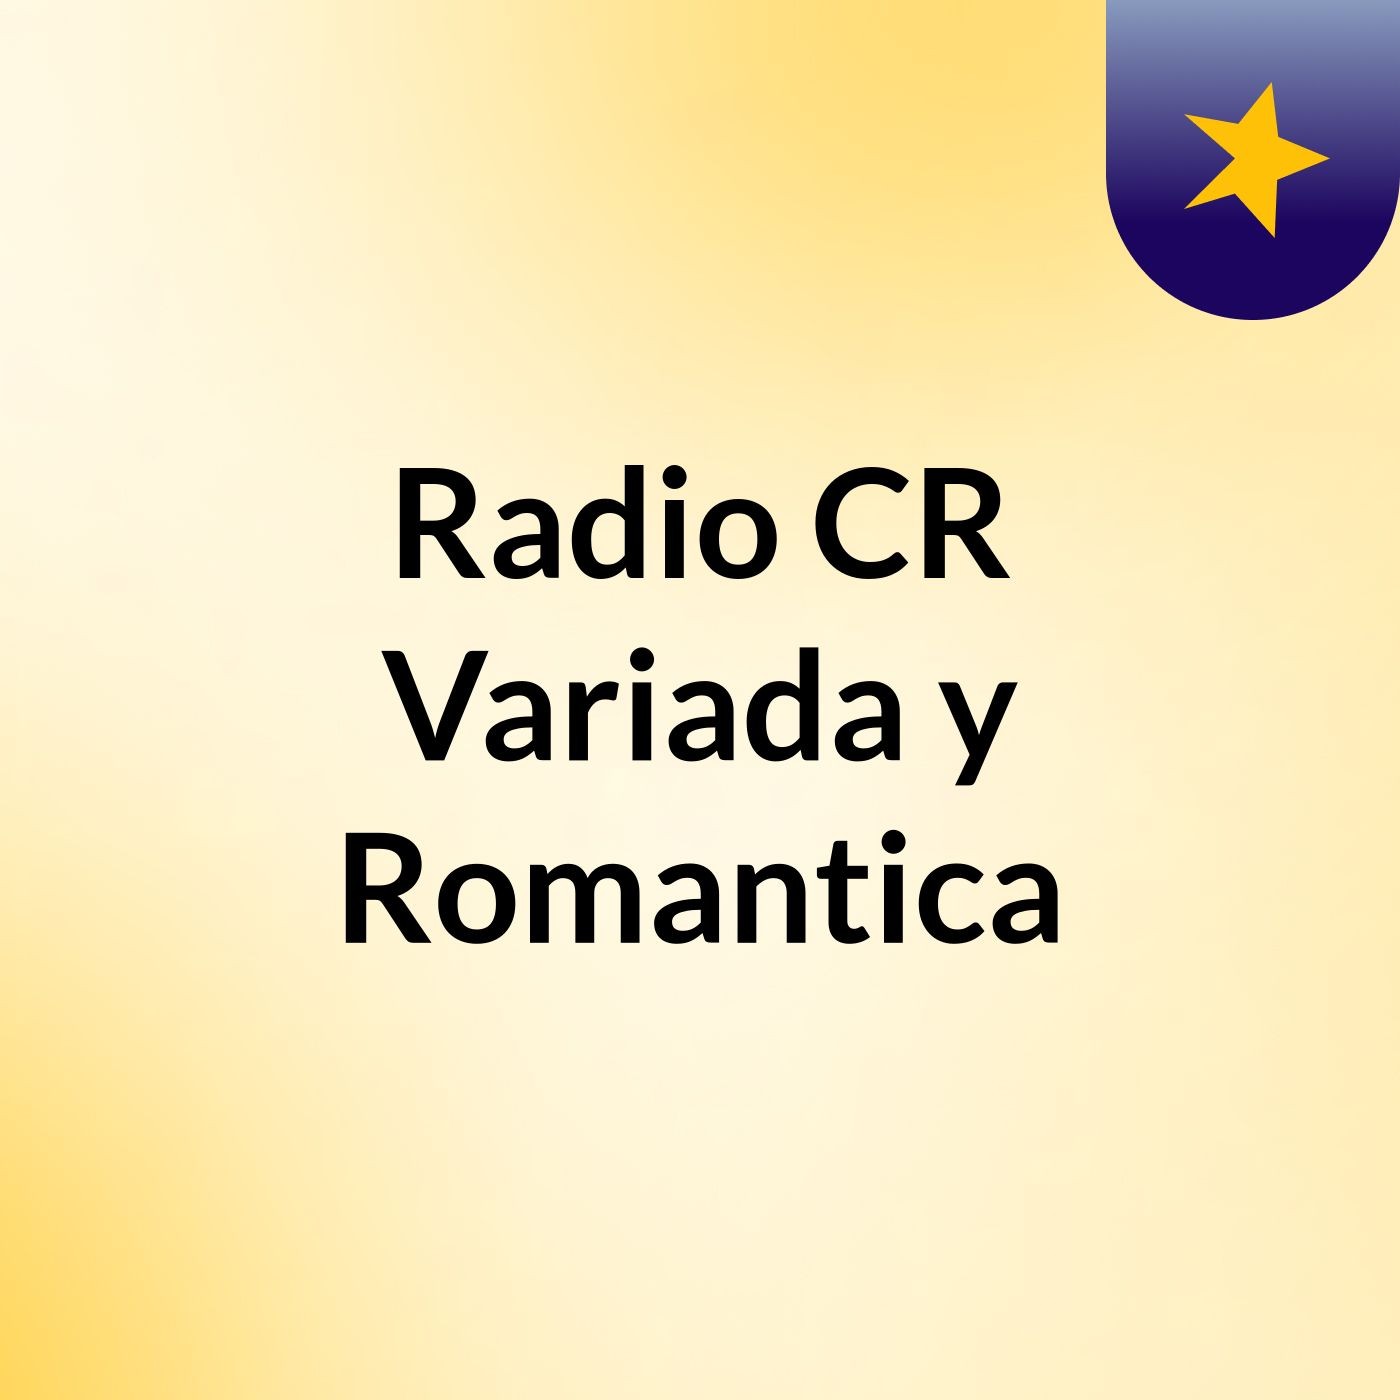 Radio CR Variada y Romantica